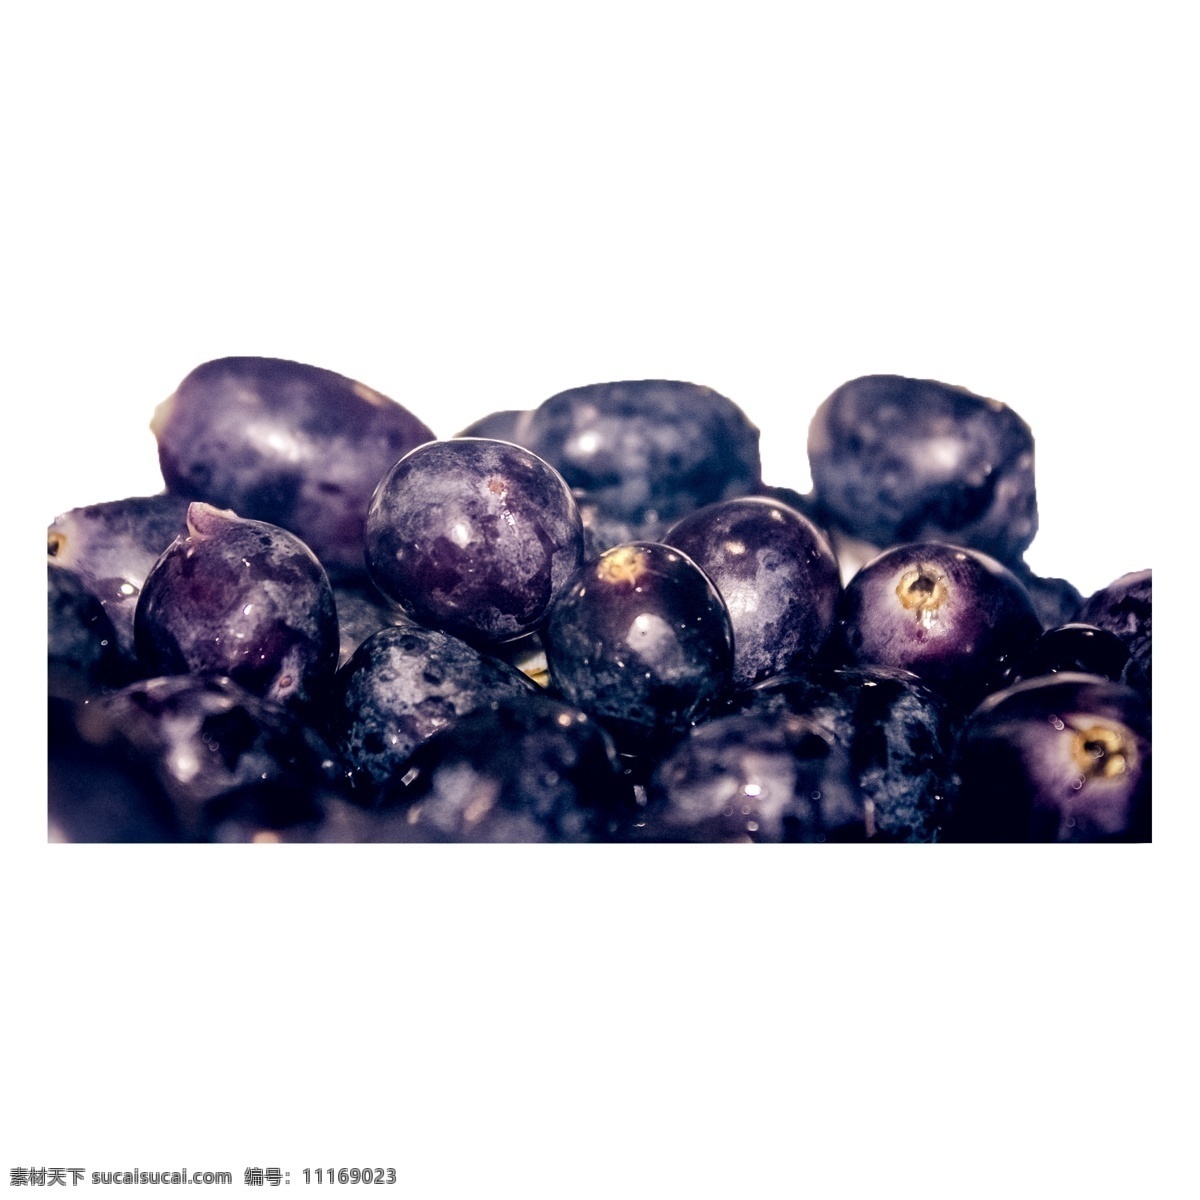 许多 新鲜 葡萄 许多葡萄 紫色葡萄 植物 水果 营养 大颗粒 维生素 美味 采摘 现摘